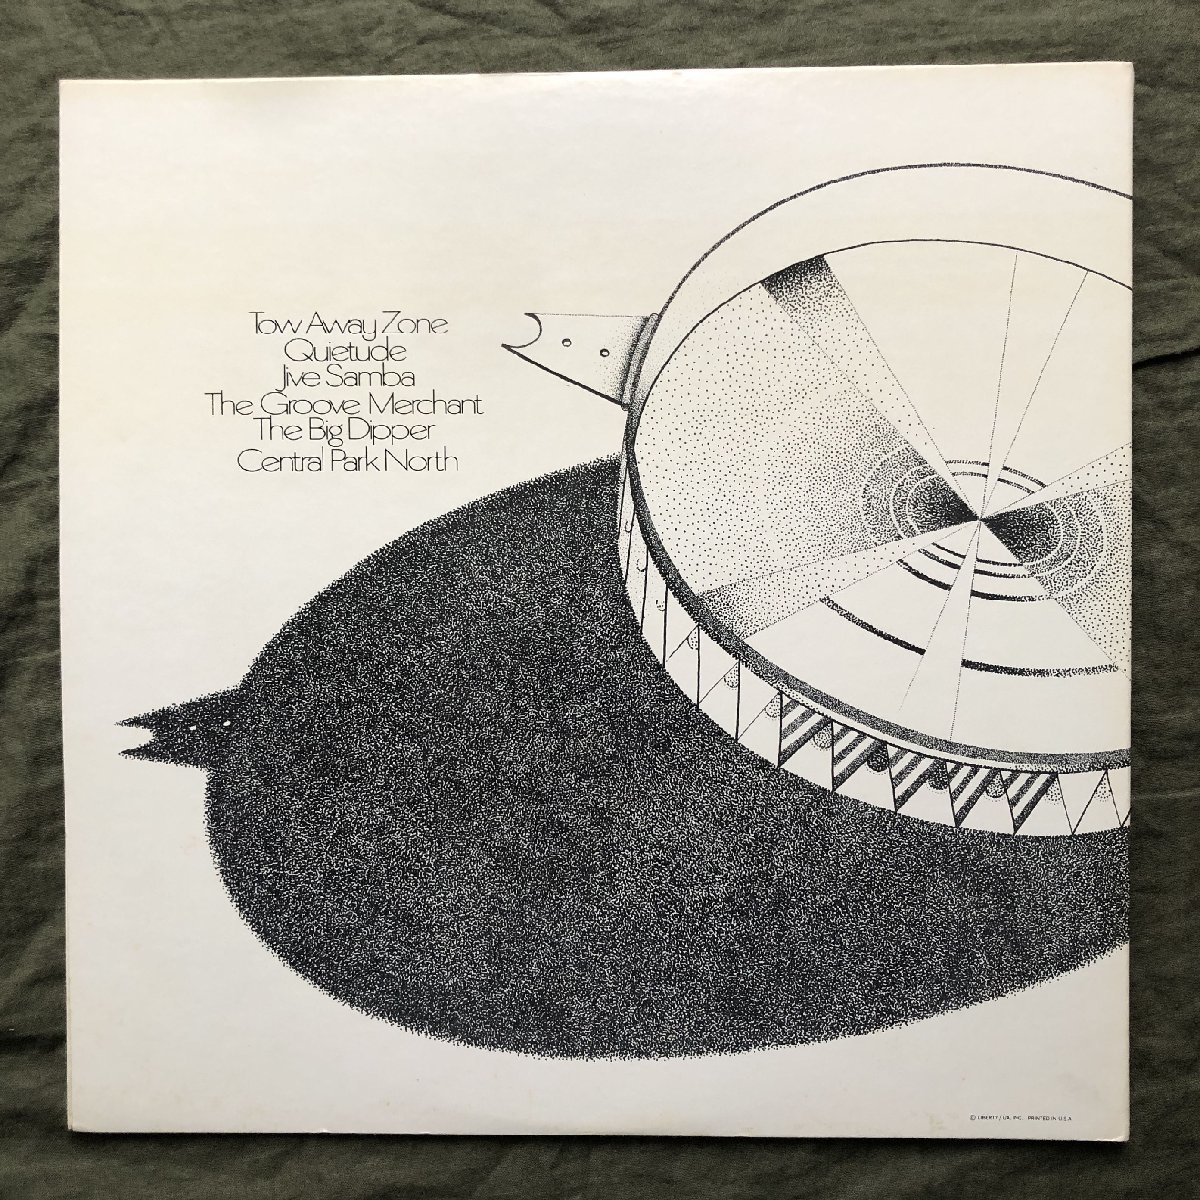 原信夫Collection 傷なし美盤 良ジャケ 1969年 米国 本国オリジナルリリース盤 Thad Jones / Mel Lewis LPレコード Central Park North_画像2